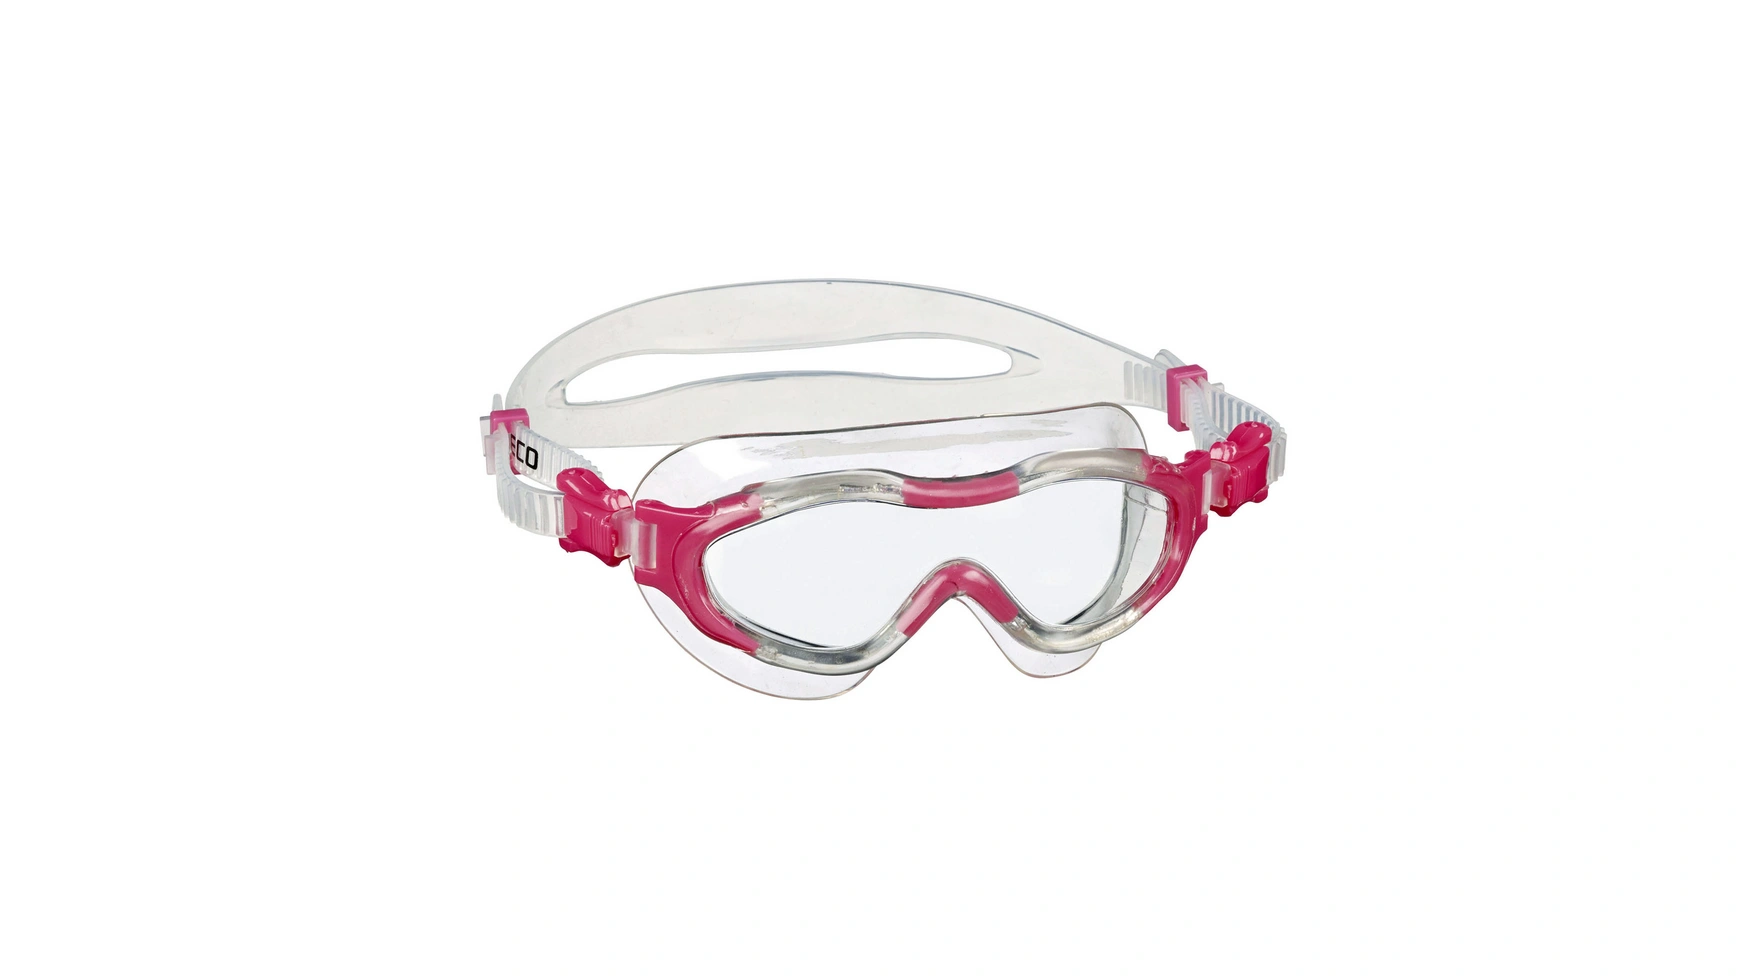 Beco Alicante 4+ Мягкие панорамные очки для детей от 4 лет и старше очки для плавания для мужчин и женщин аксессуары для плавания противотуманные с уф защитой водонепроницаемые силиконовые для близоруко